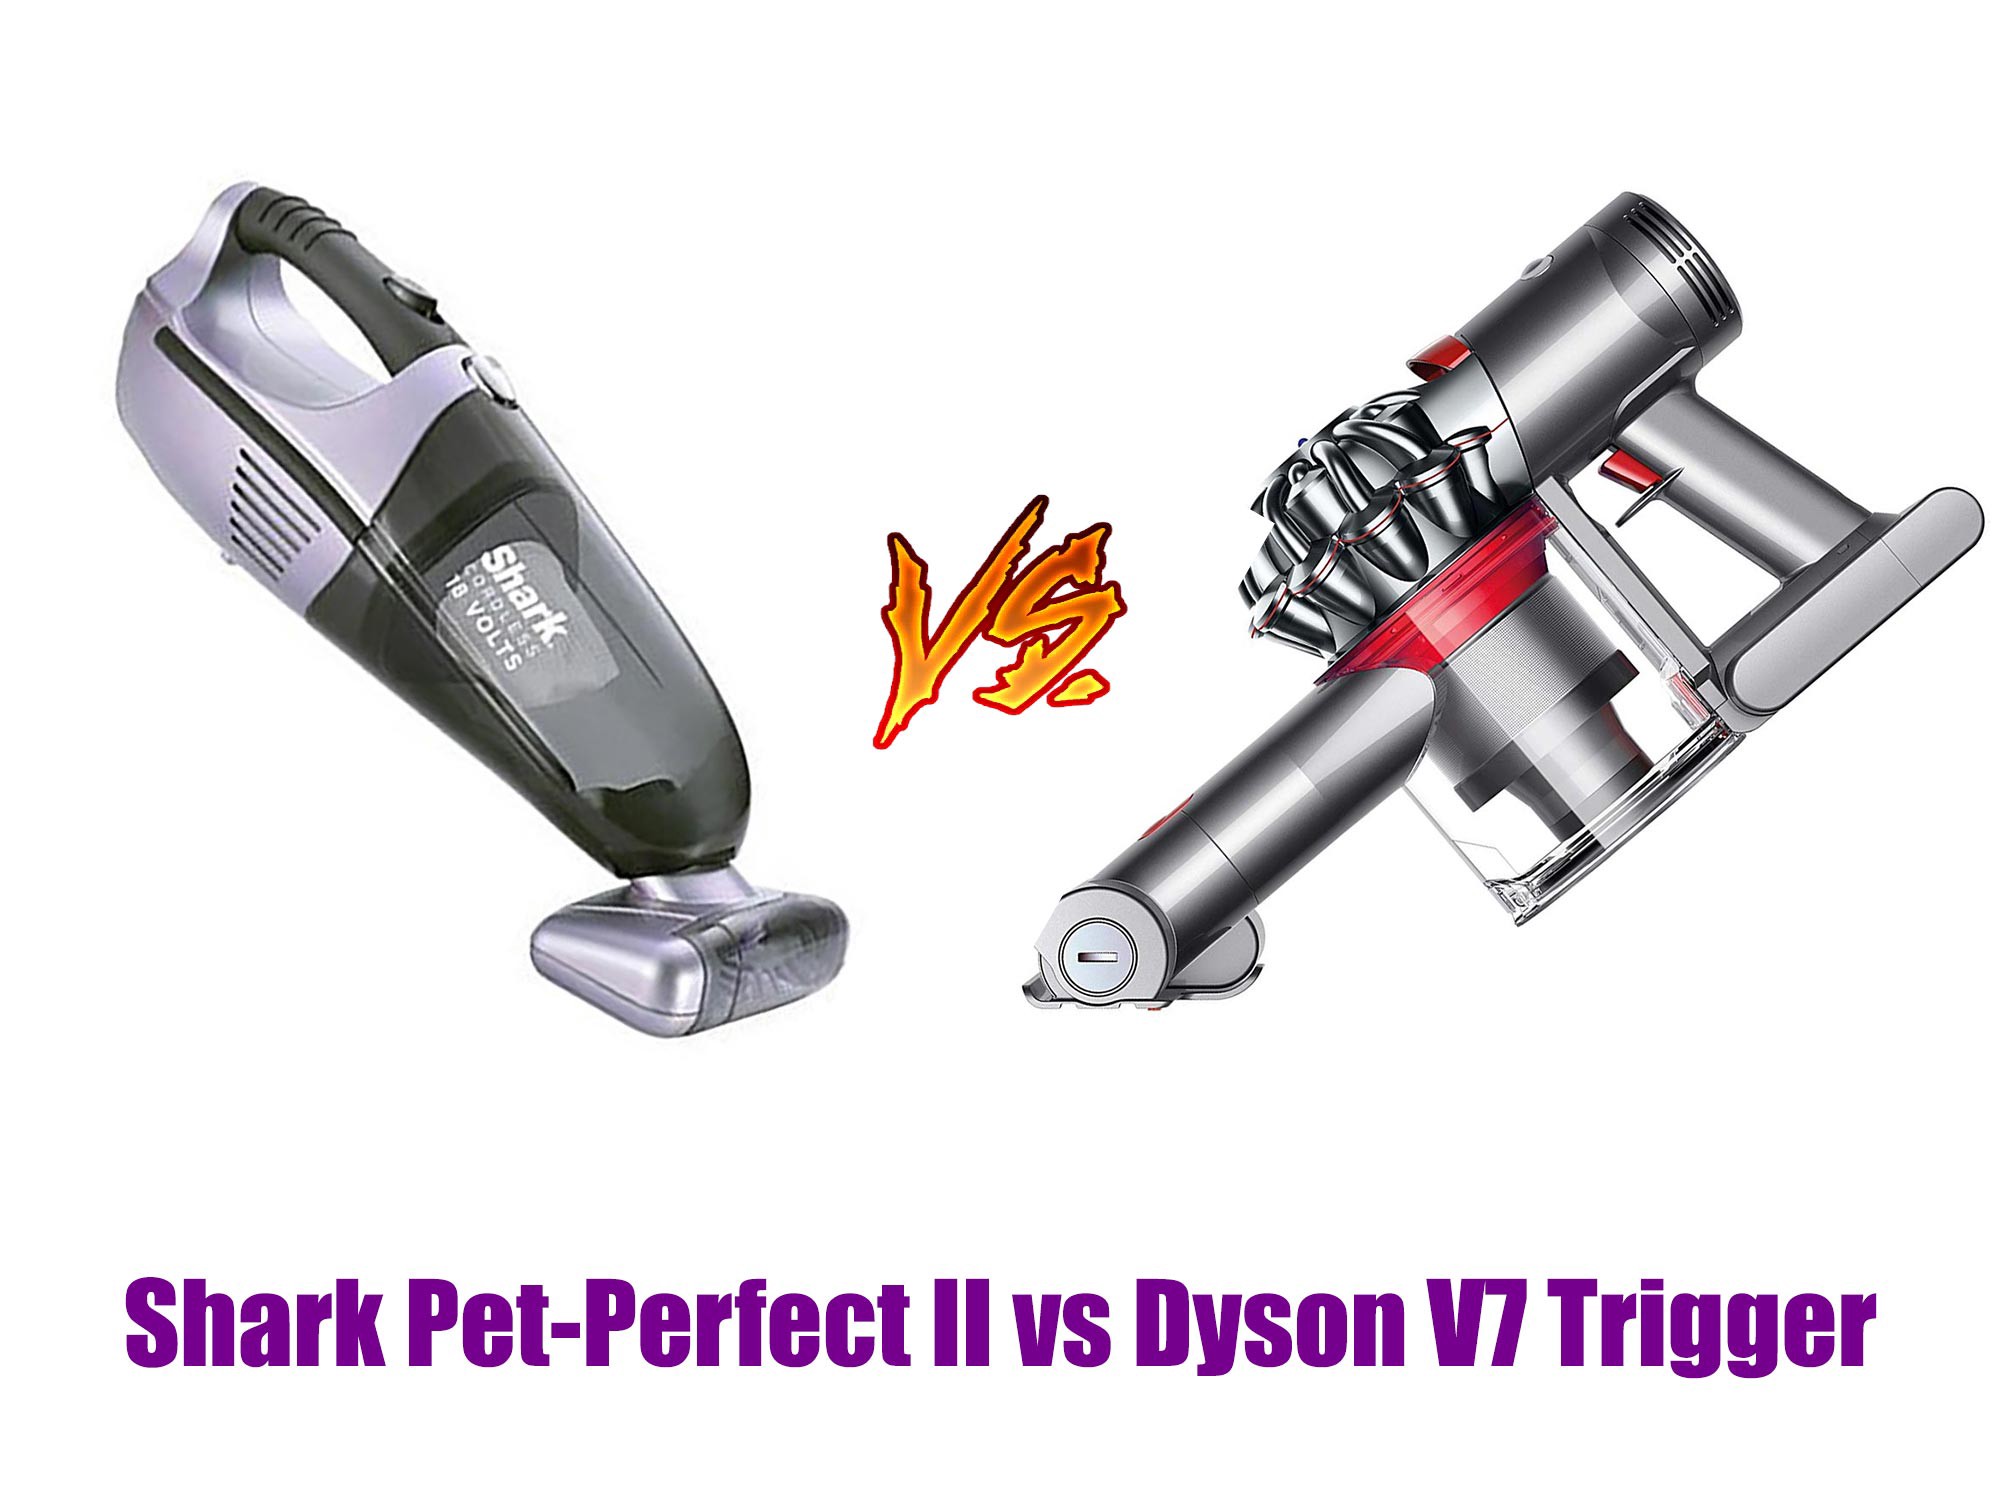 Shark Pet-Perfect II vs Dyson V7 Trigger